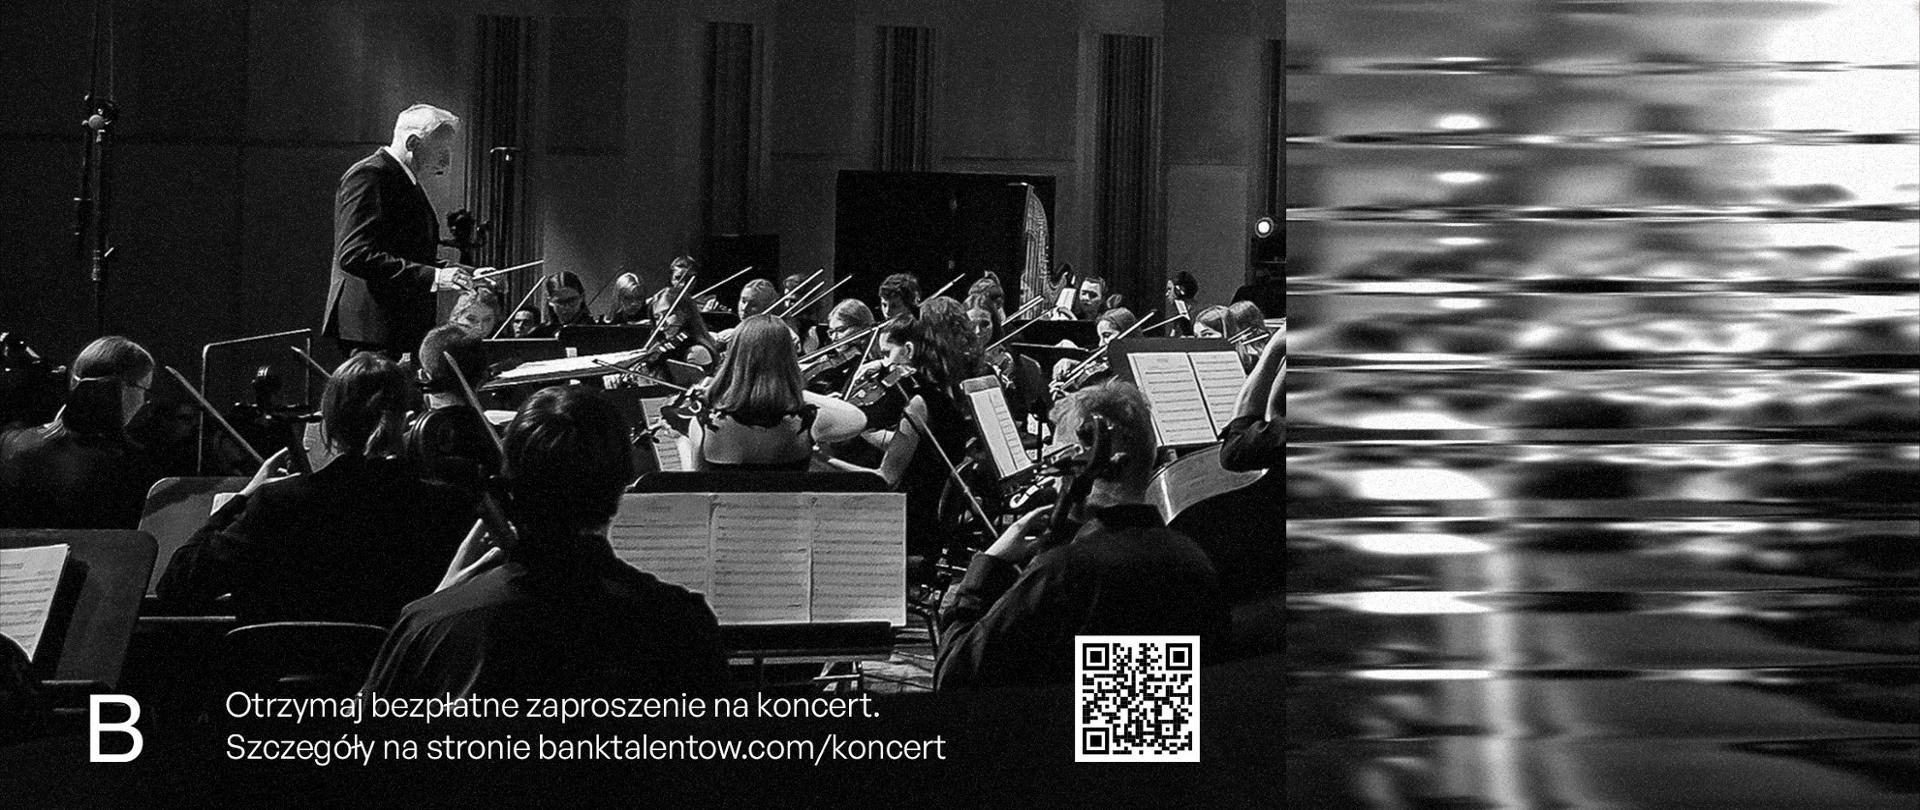 Plakat promujący koncert finałowy trzeciej edycji Opolskiego Banku Talentów zawierający informacje o wydarzeniu oraz czarno-białe zdjęcie w dolnej części przedstawiające orkiestrę symfoniczną pod dyrekcją Krzesimira Dębskiego 